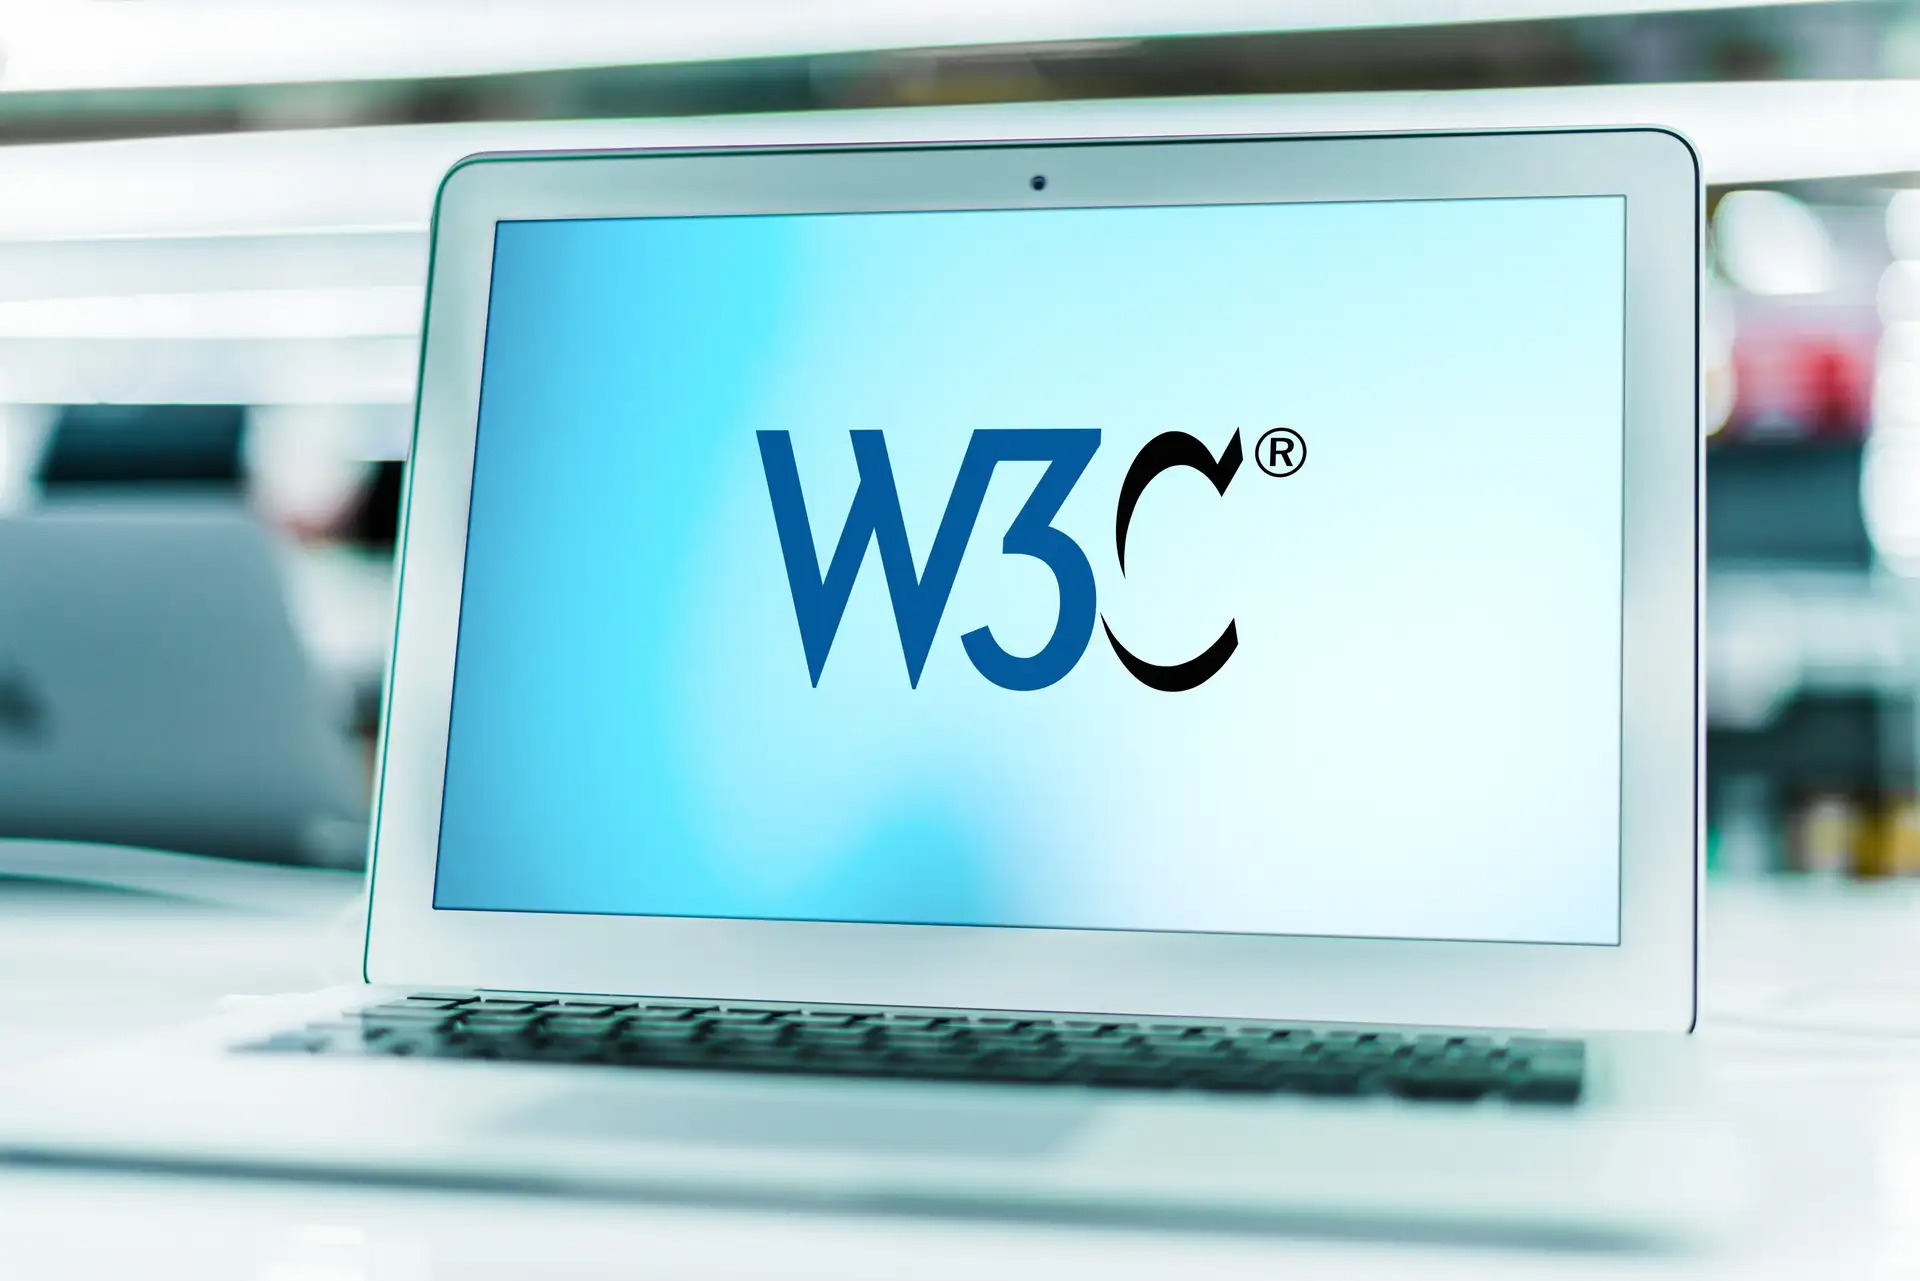 w3c - W3C: Was ist das?